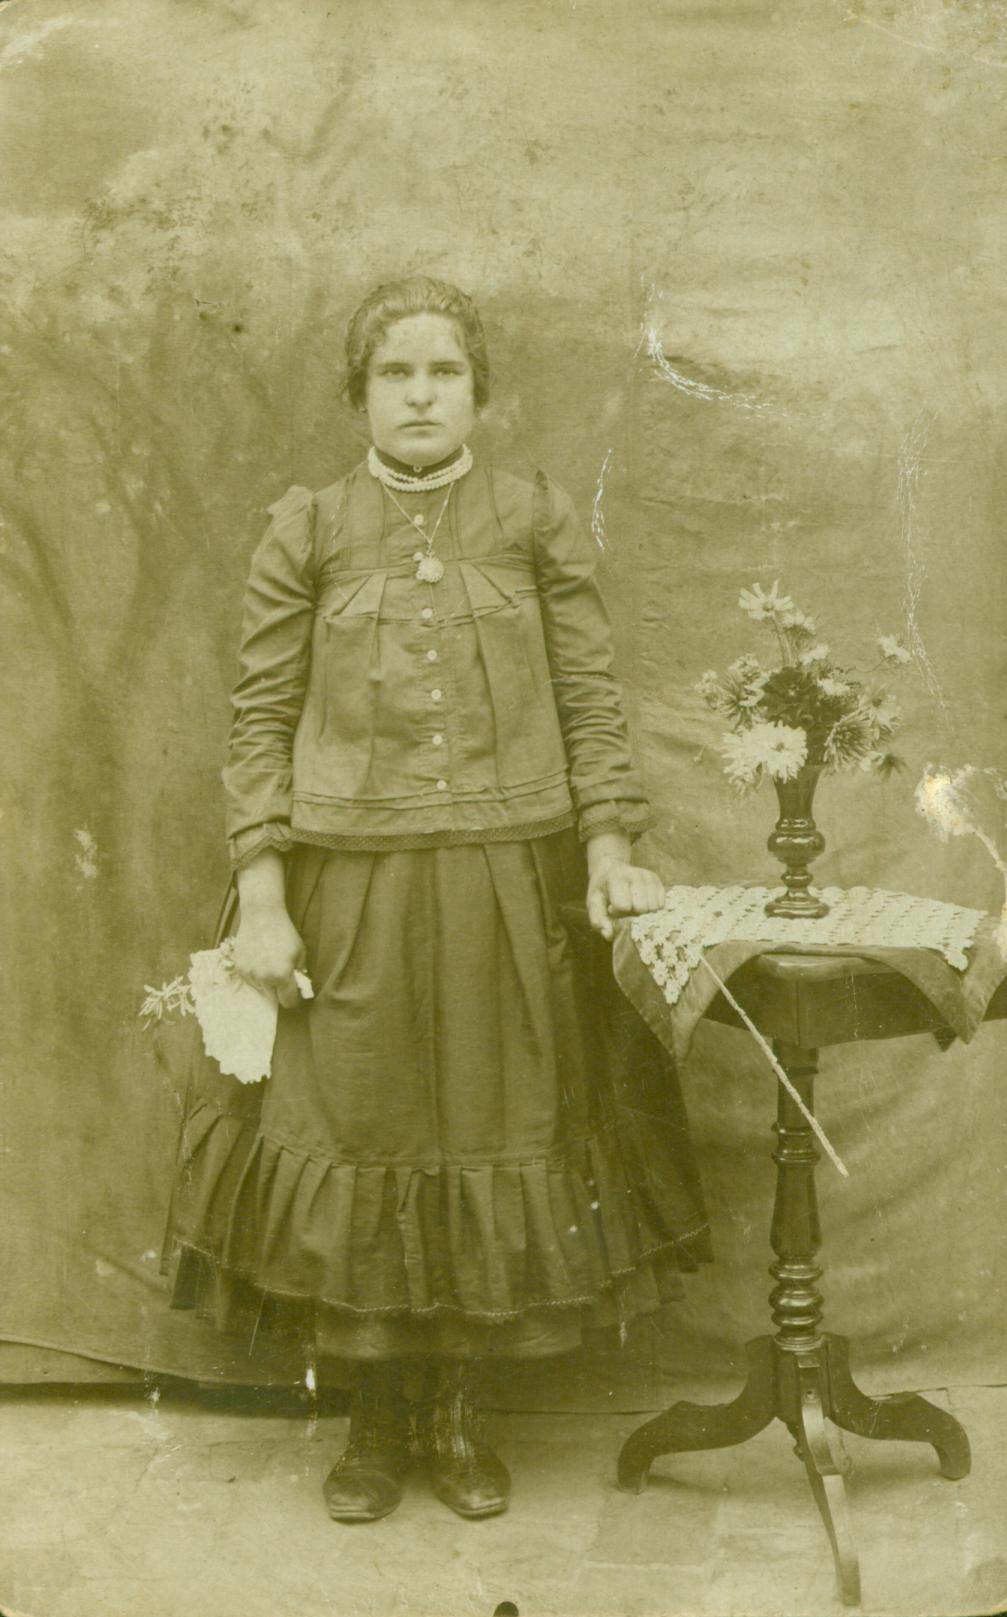 Somogyudvarihelyi női viselet az 1900-as évekből (Rippl-Rónai Múzeum CC BY-NC-ND)